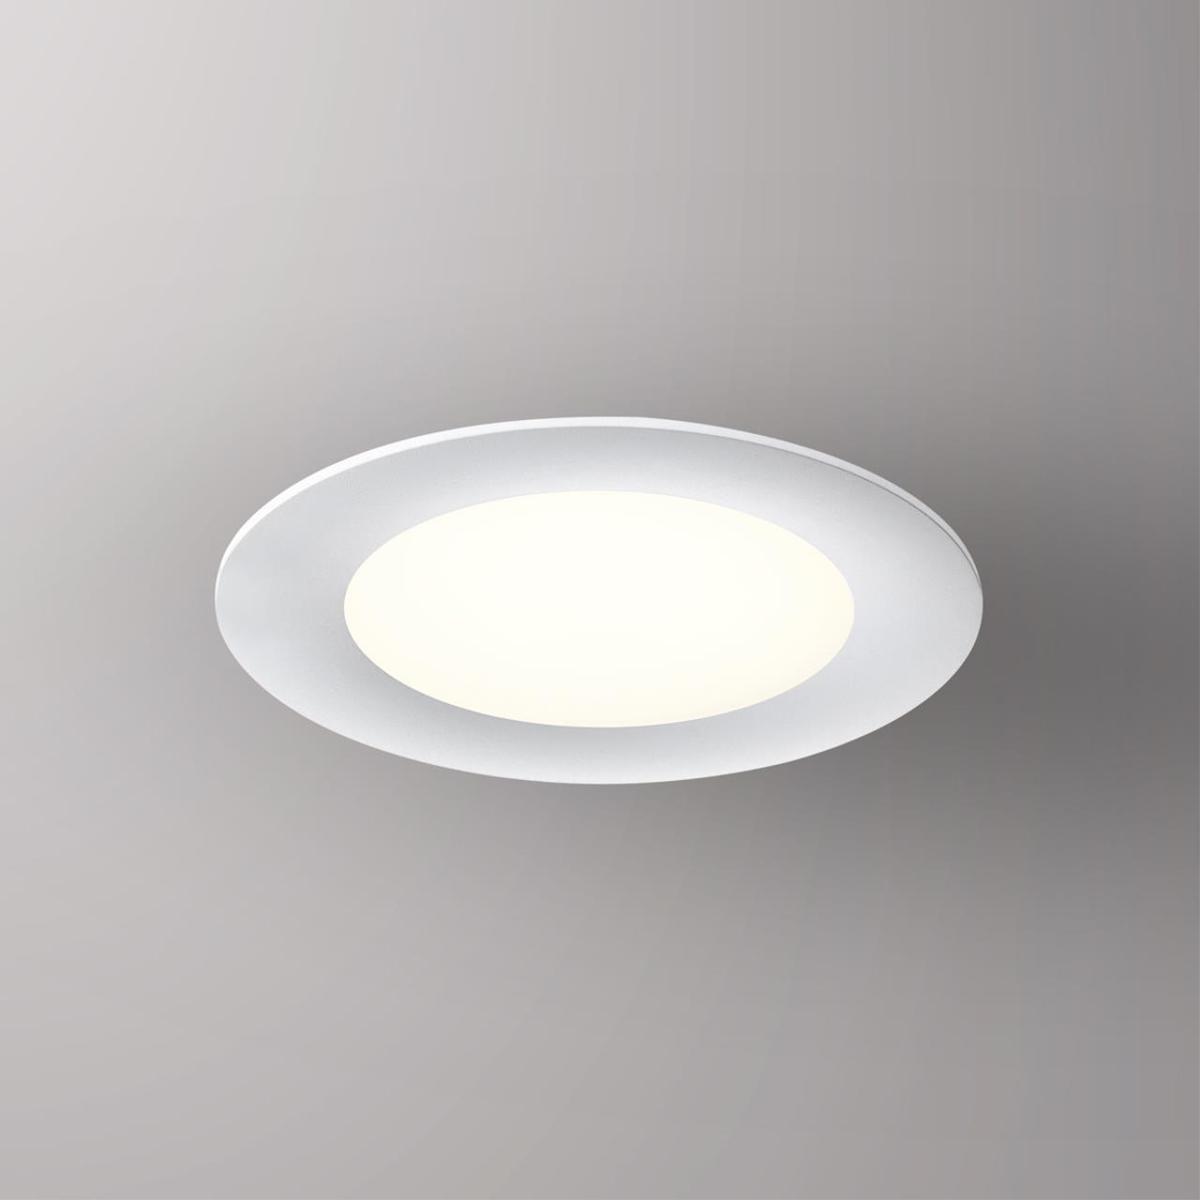 Встраиваемый светодиодный светильник Novotech Spot Lante 358949